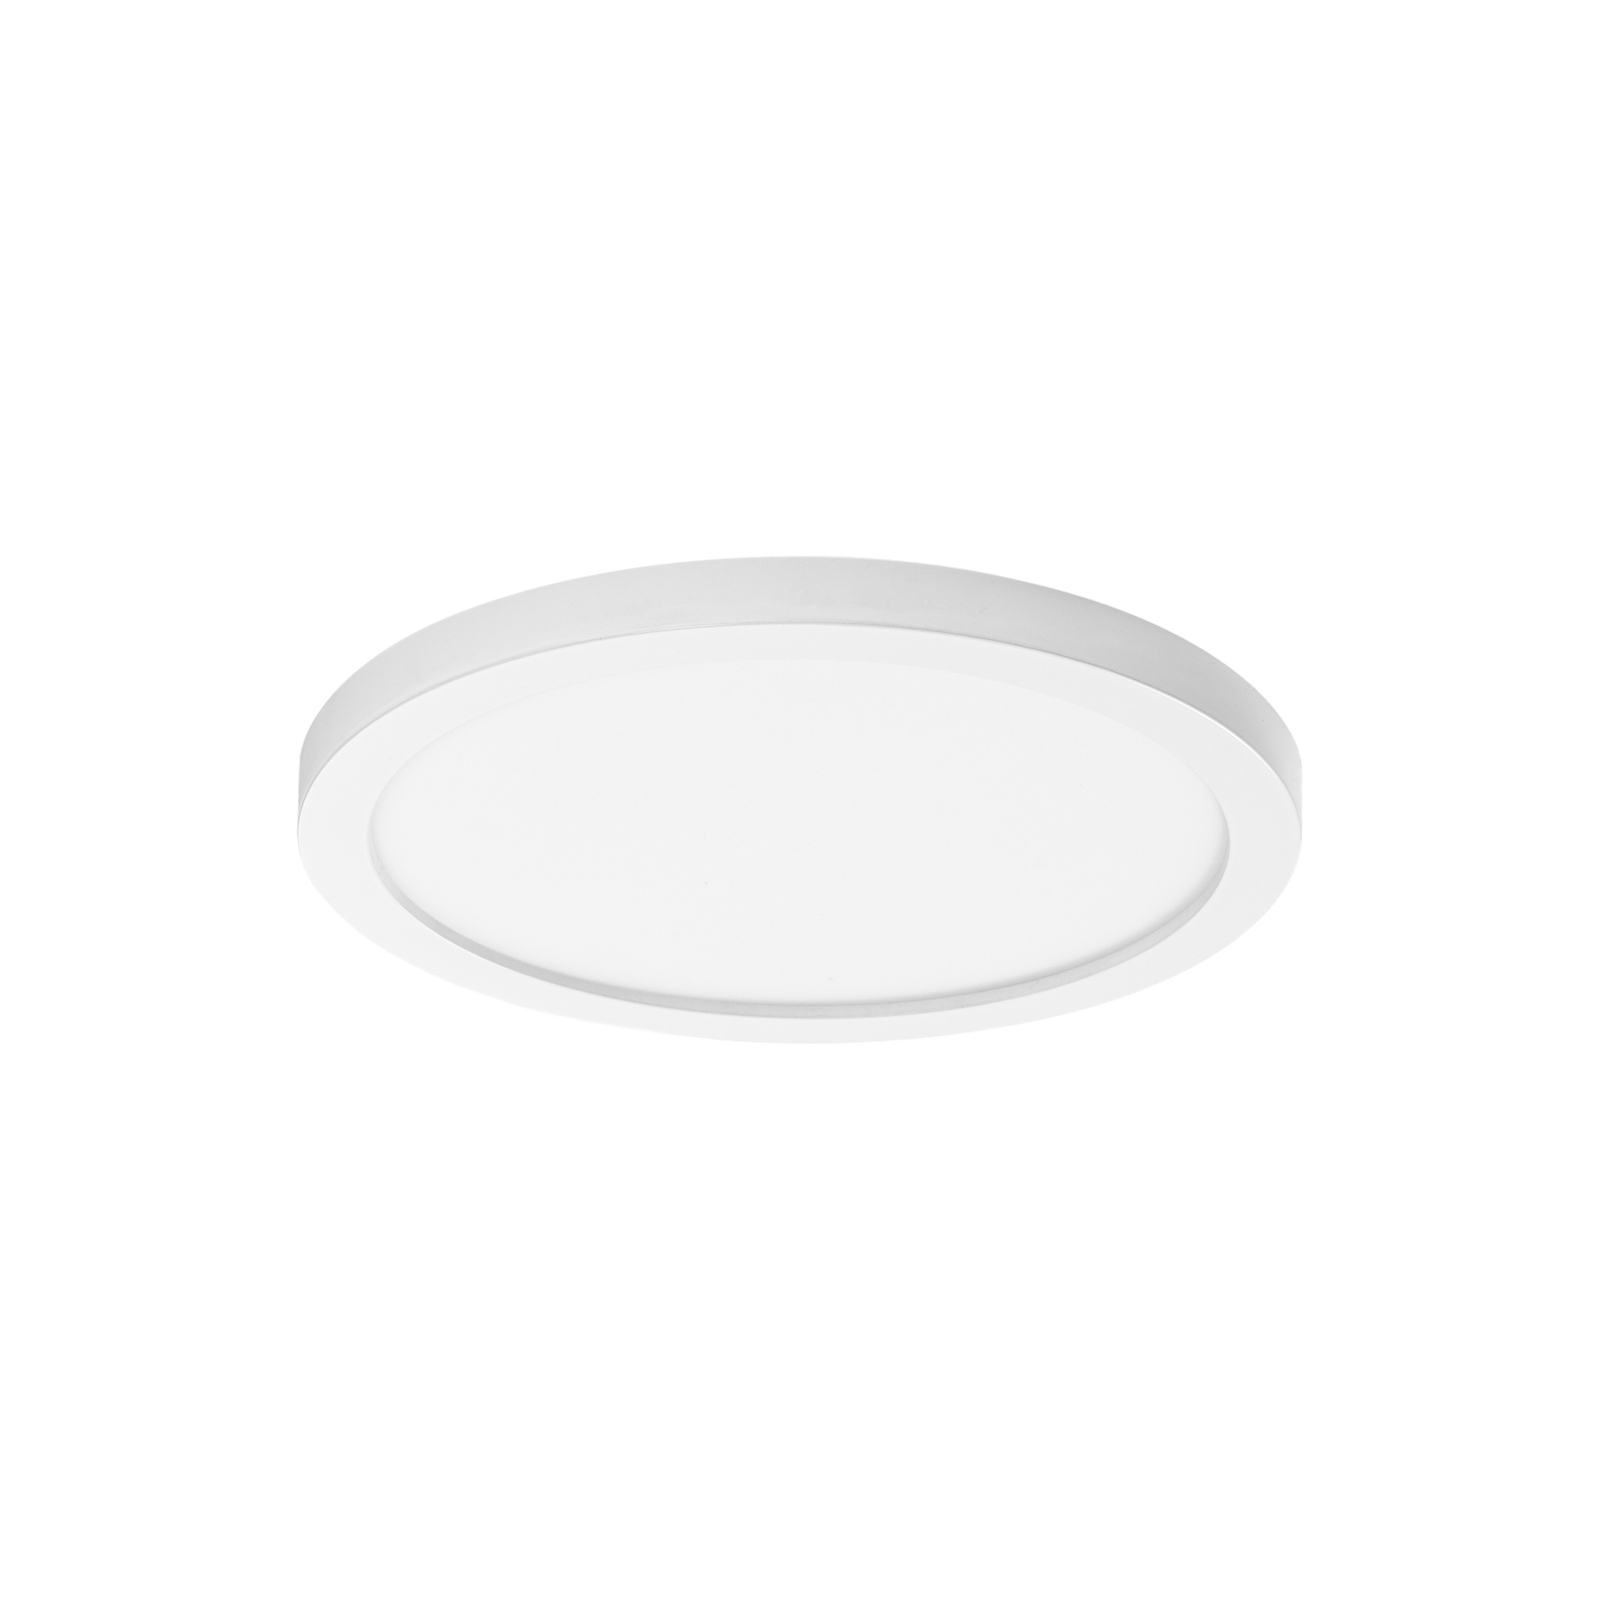 Solvie LED ceiling light, white, round, Ø 30 cm